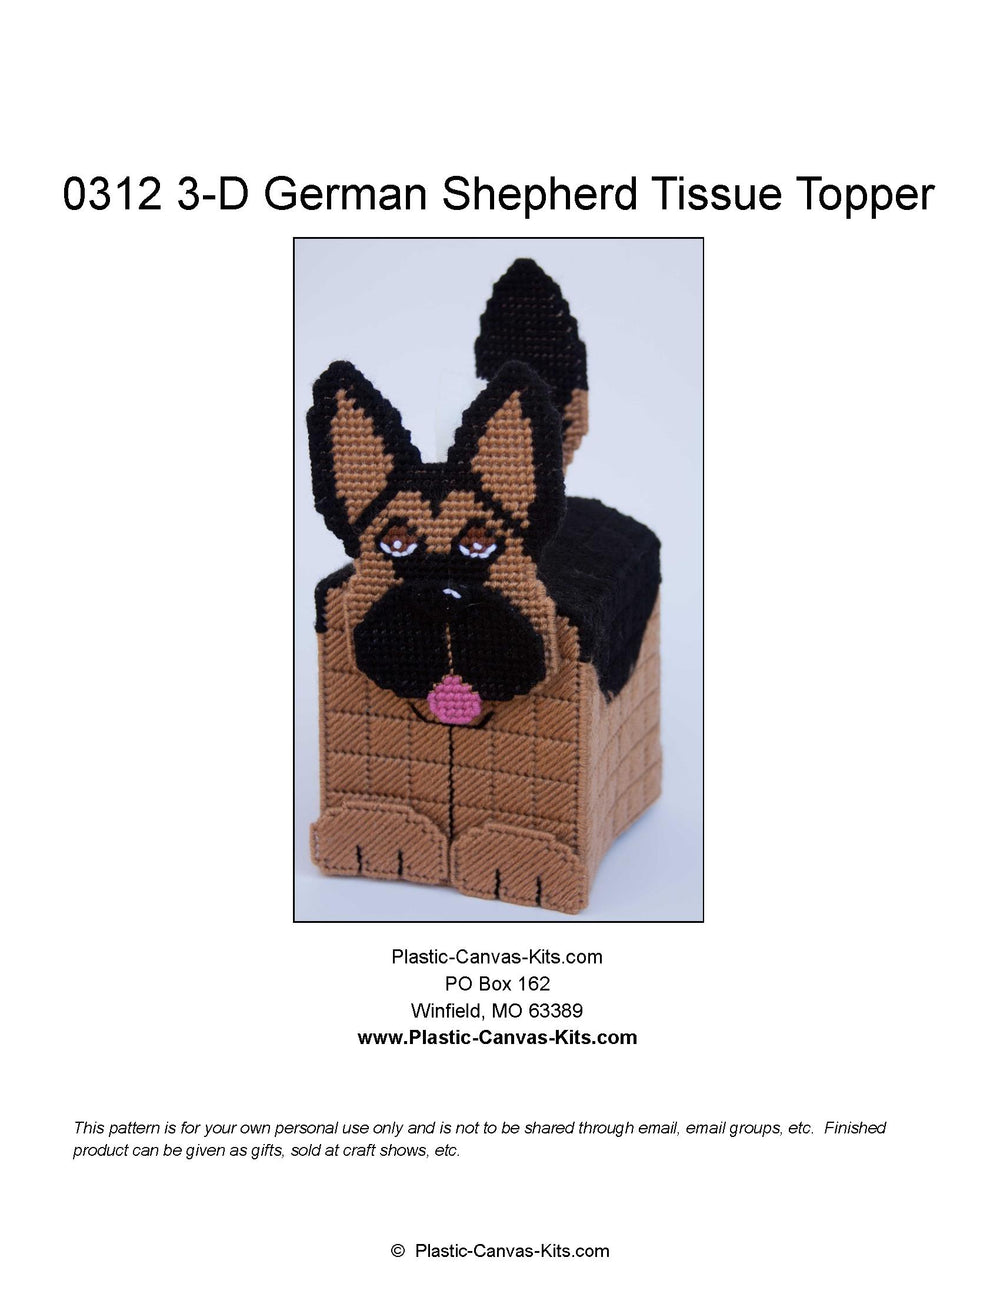 German Shepherd 3-D  Tissue Topper